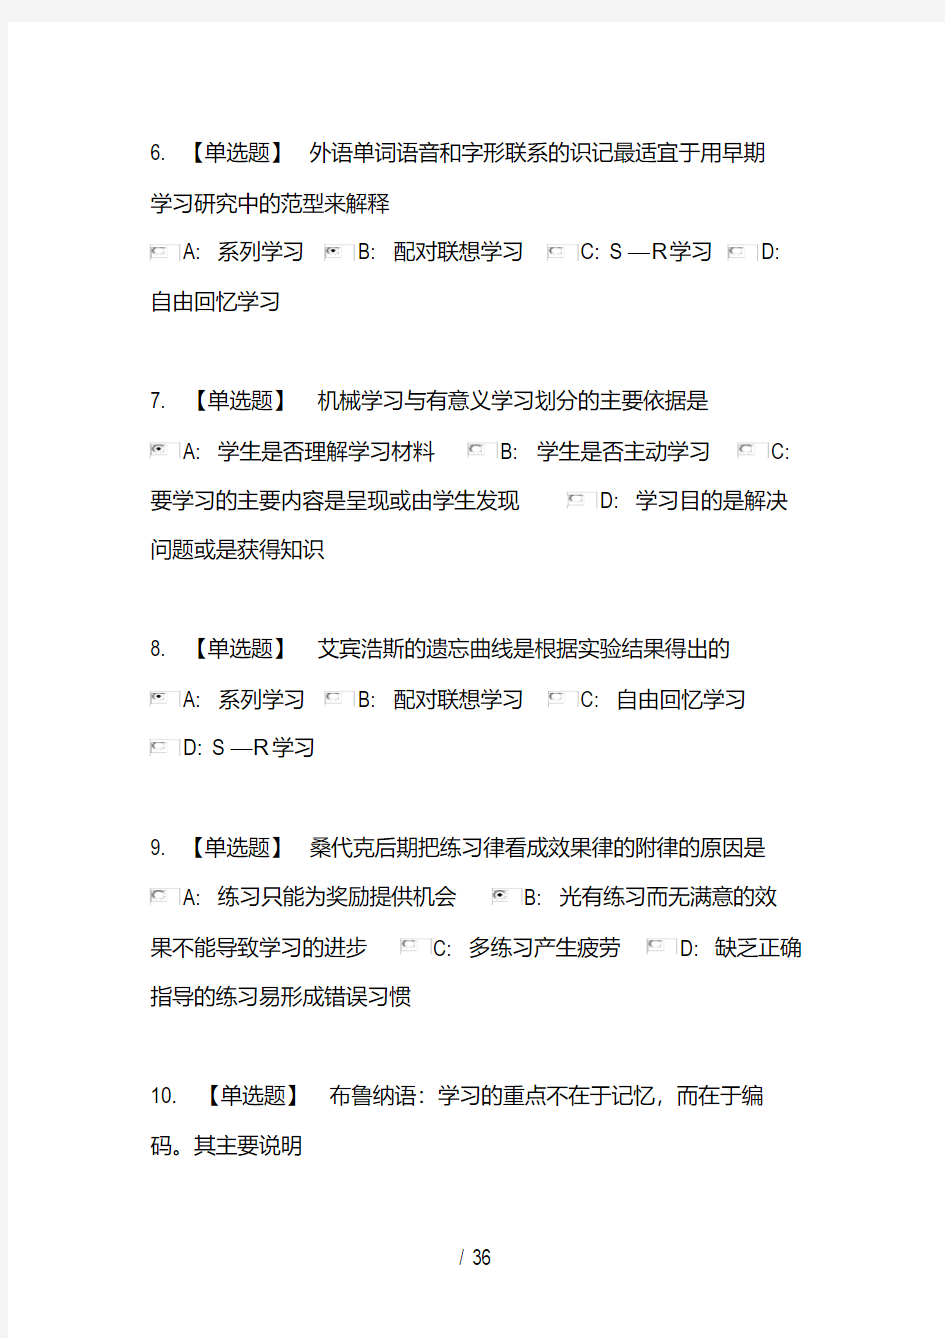 李晓东教育心理学题库-完整版(第一章至第十三章).pdf